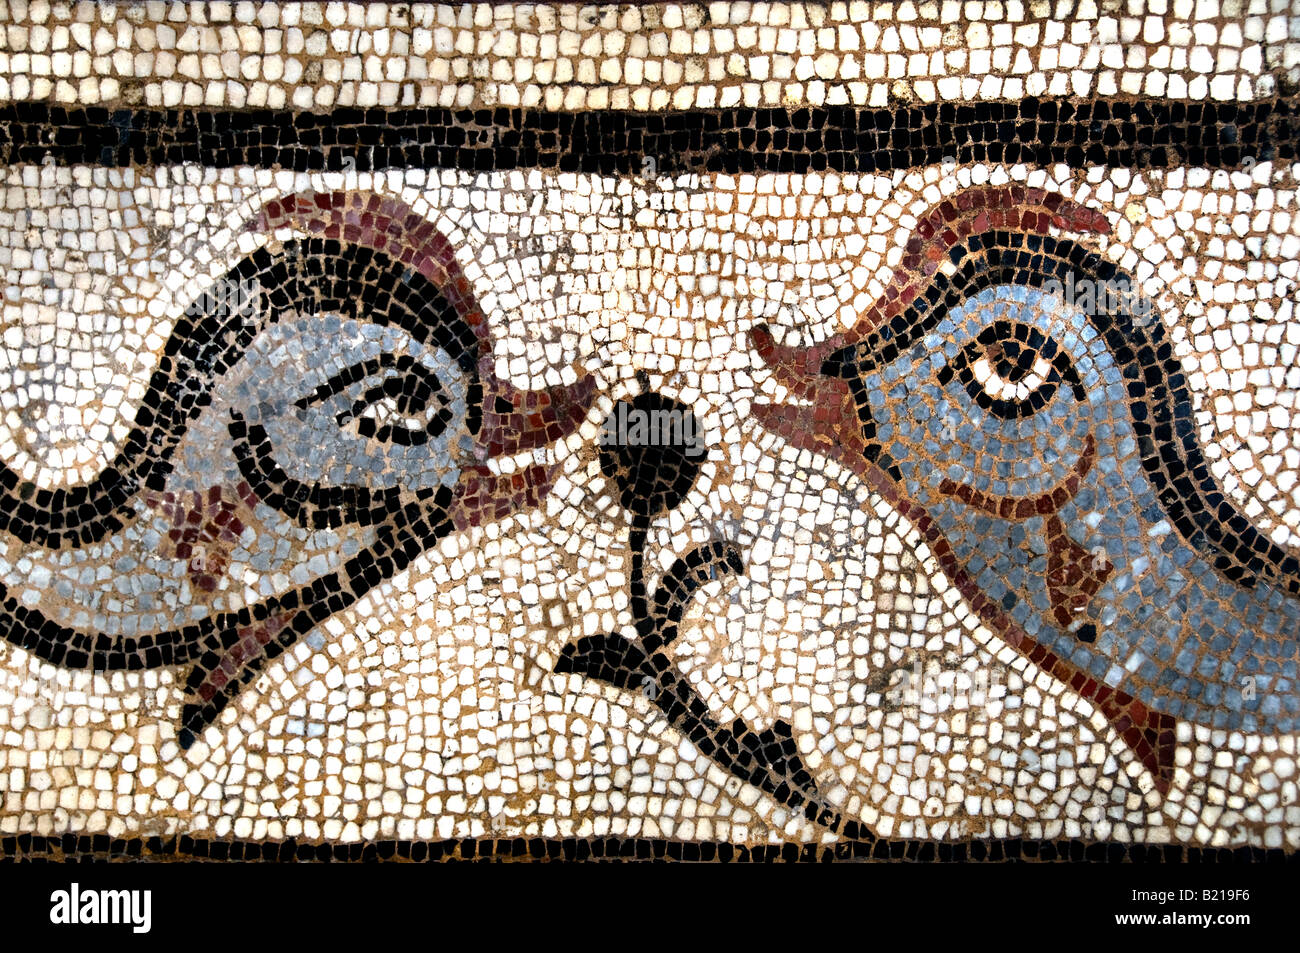 Sezioni di pesce dei mesi e delle stagioni marciapiede iv secolo D.C. Cartagine greco Grecia mitologia archeologia classica storia Foto Stock